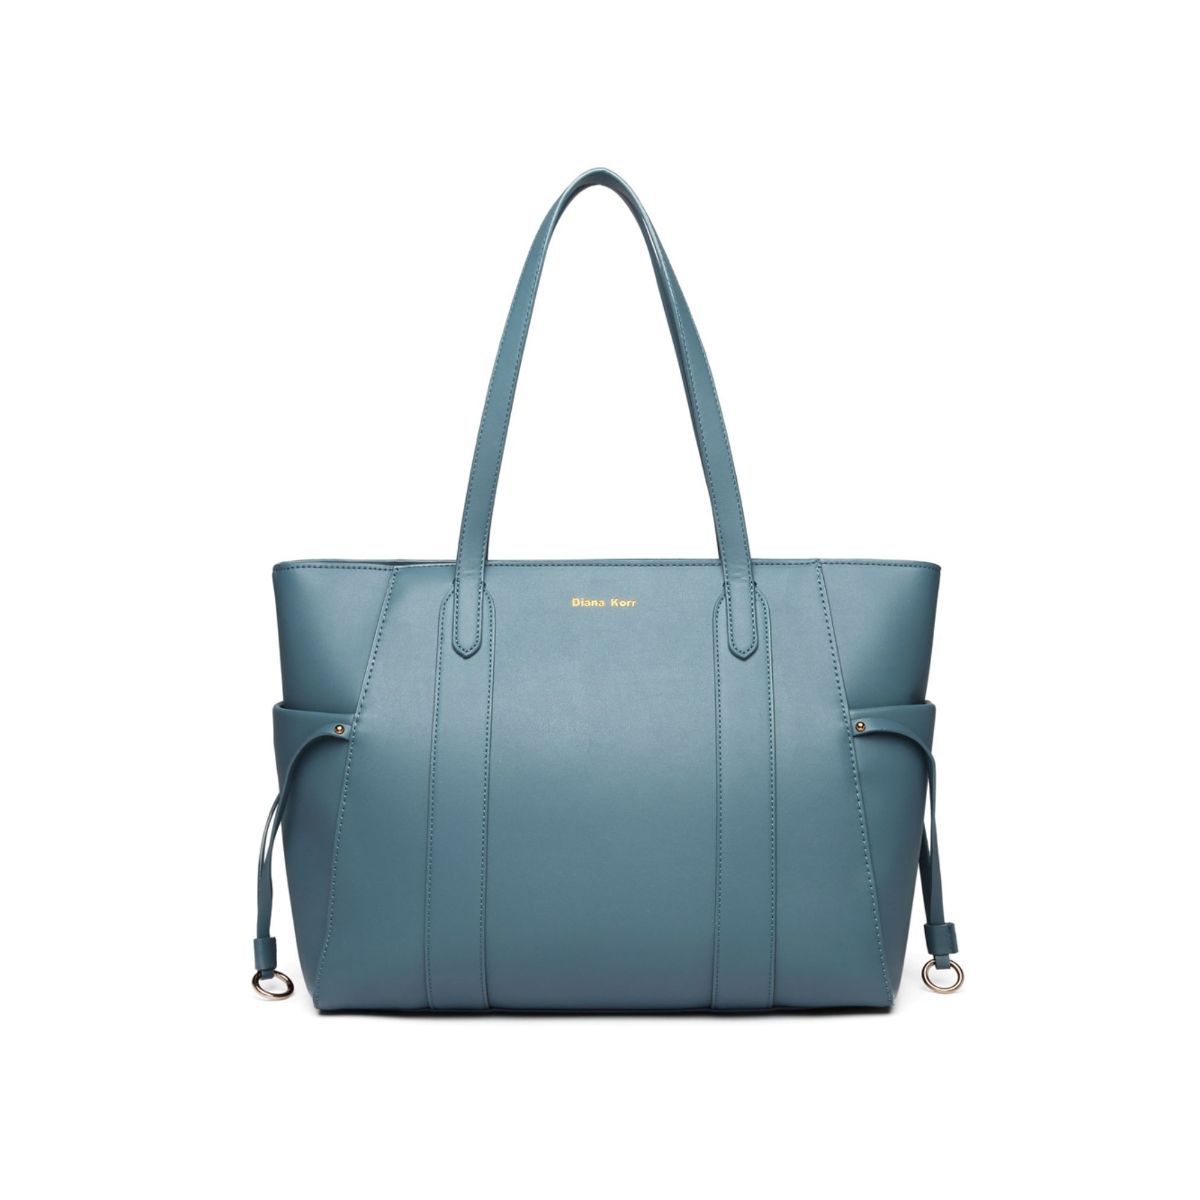 Diana Korr Blue Solid Faux Leather Handbag